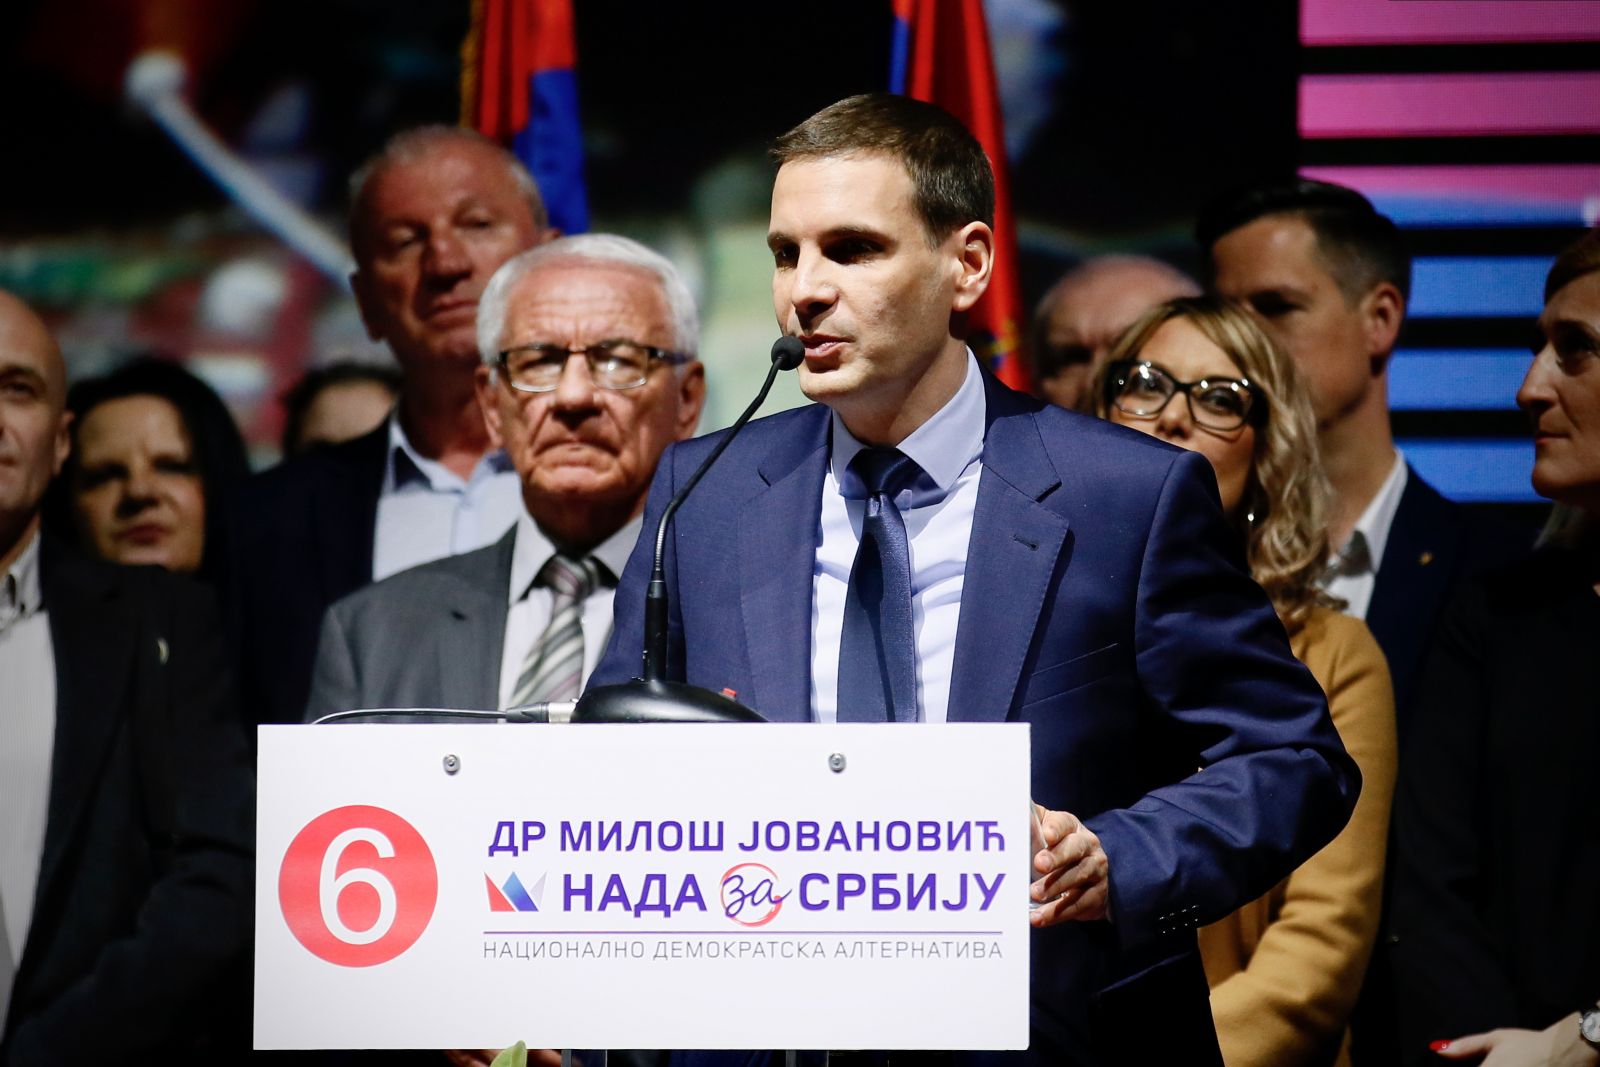 Србија би увођењем санкција Русији угрозила националне интересе